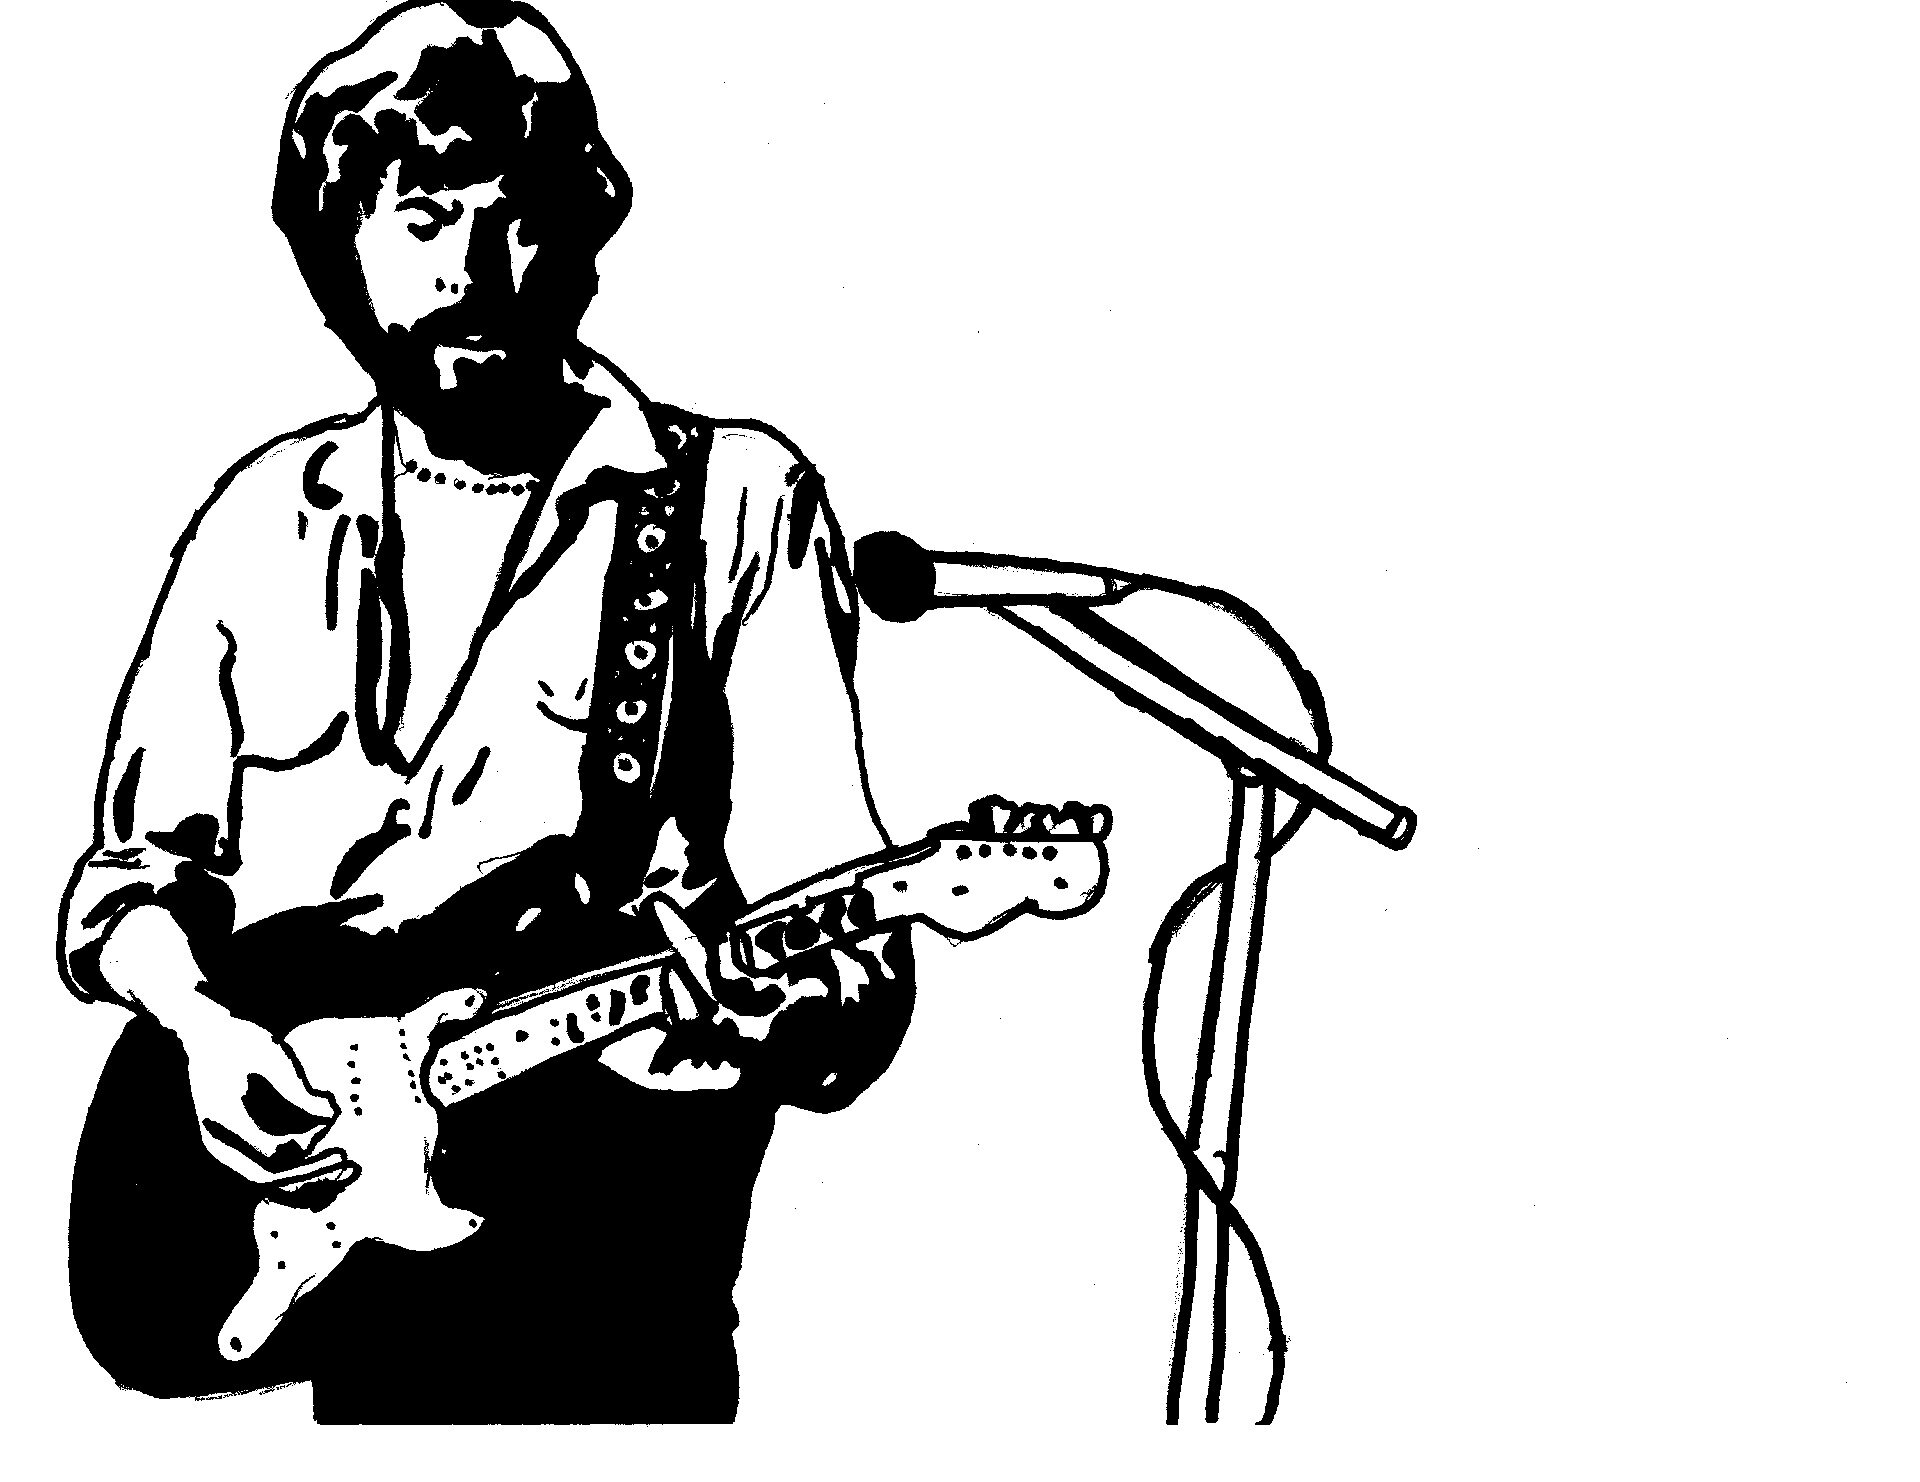 Eric Clapton by Ryan Kerr age 14